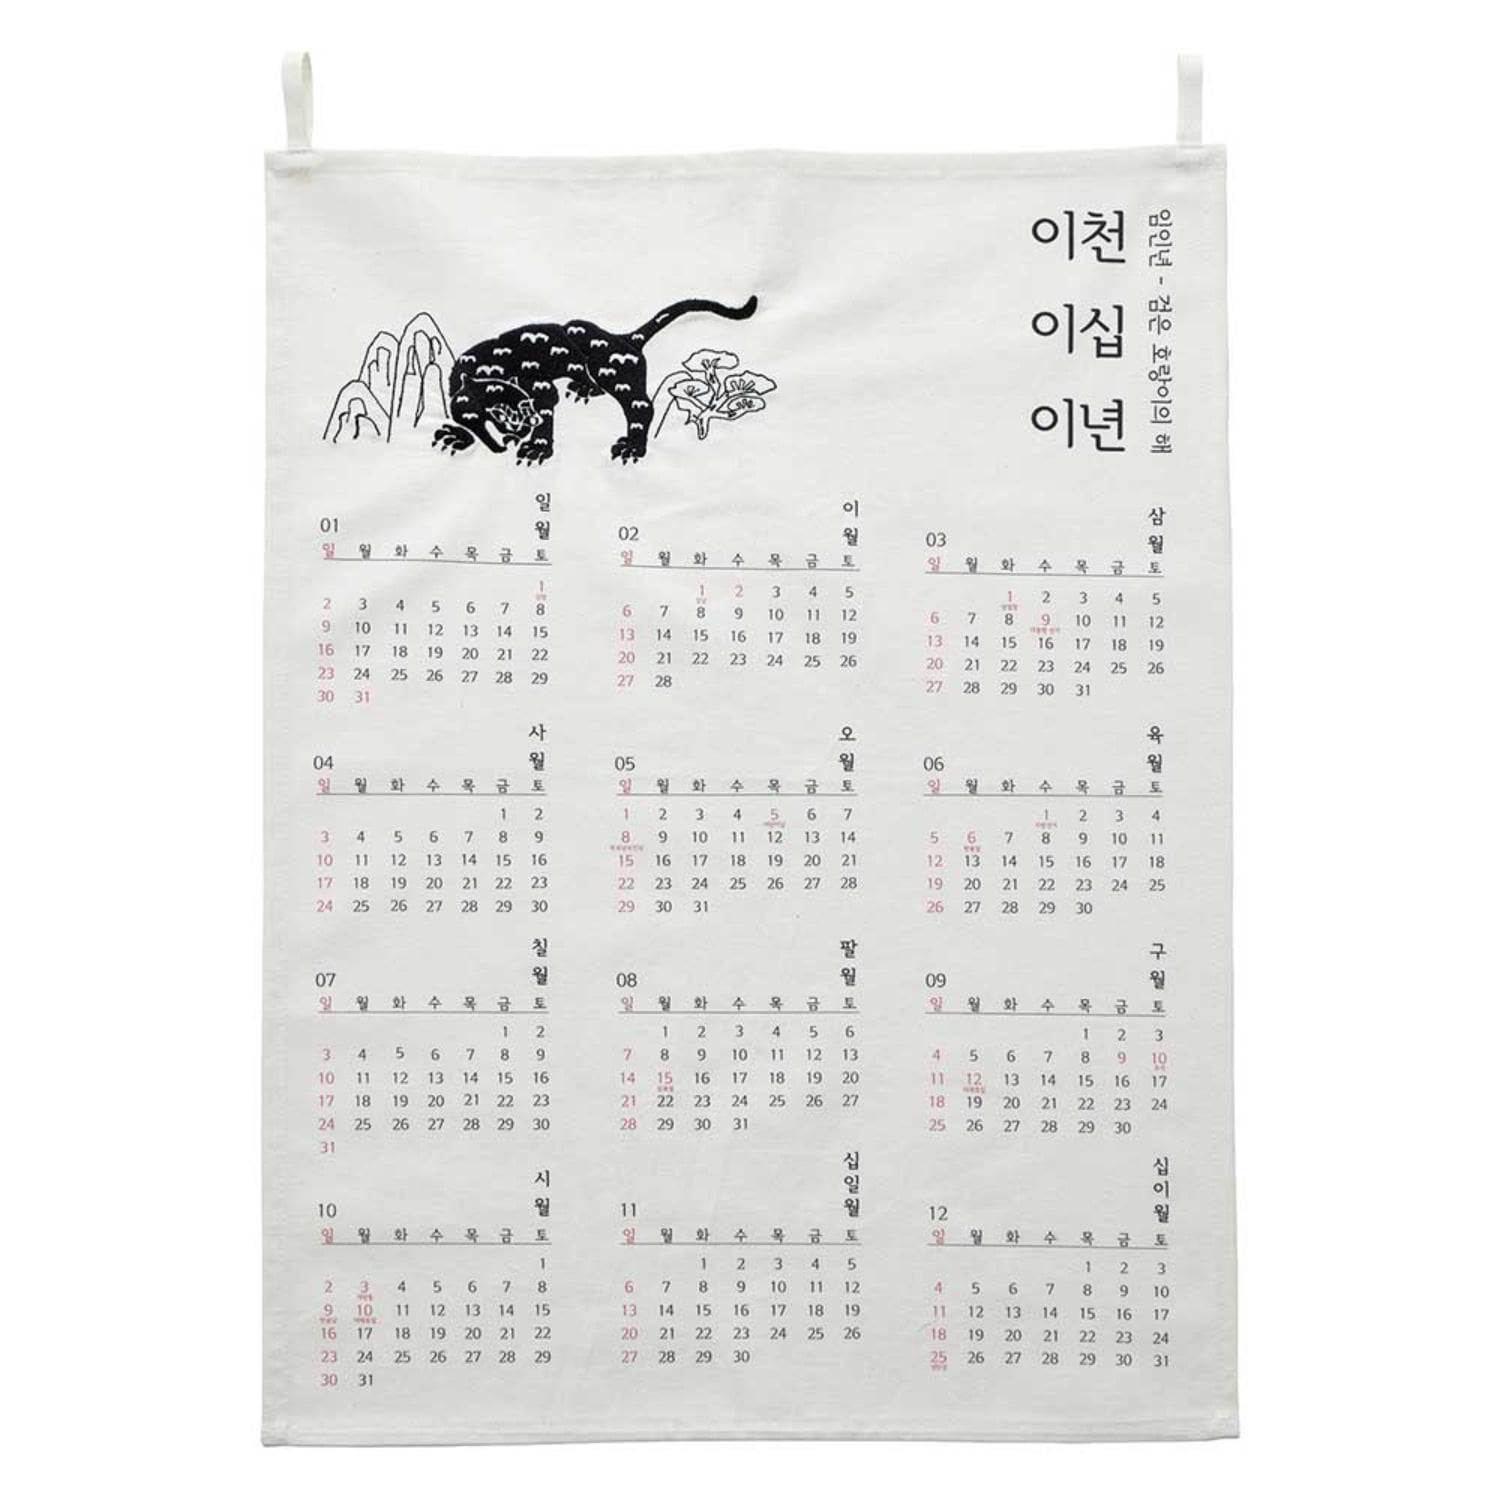 검은 호랑이의 용맹함을 담은 우리말 패브릭 달력 Korean fabric calendar with the bravery of a black tiger